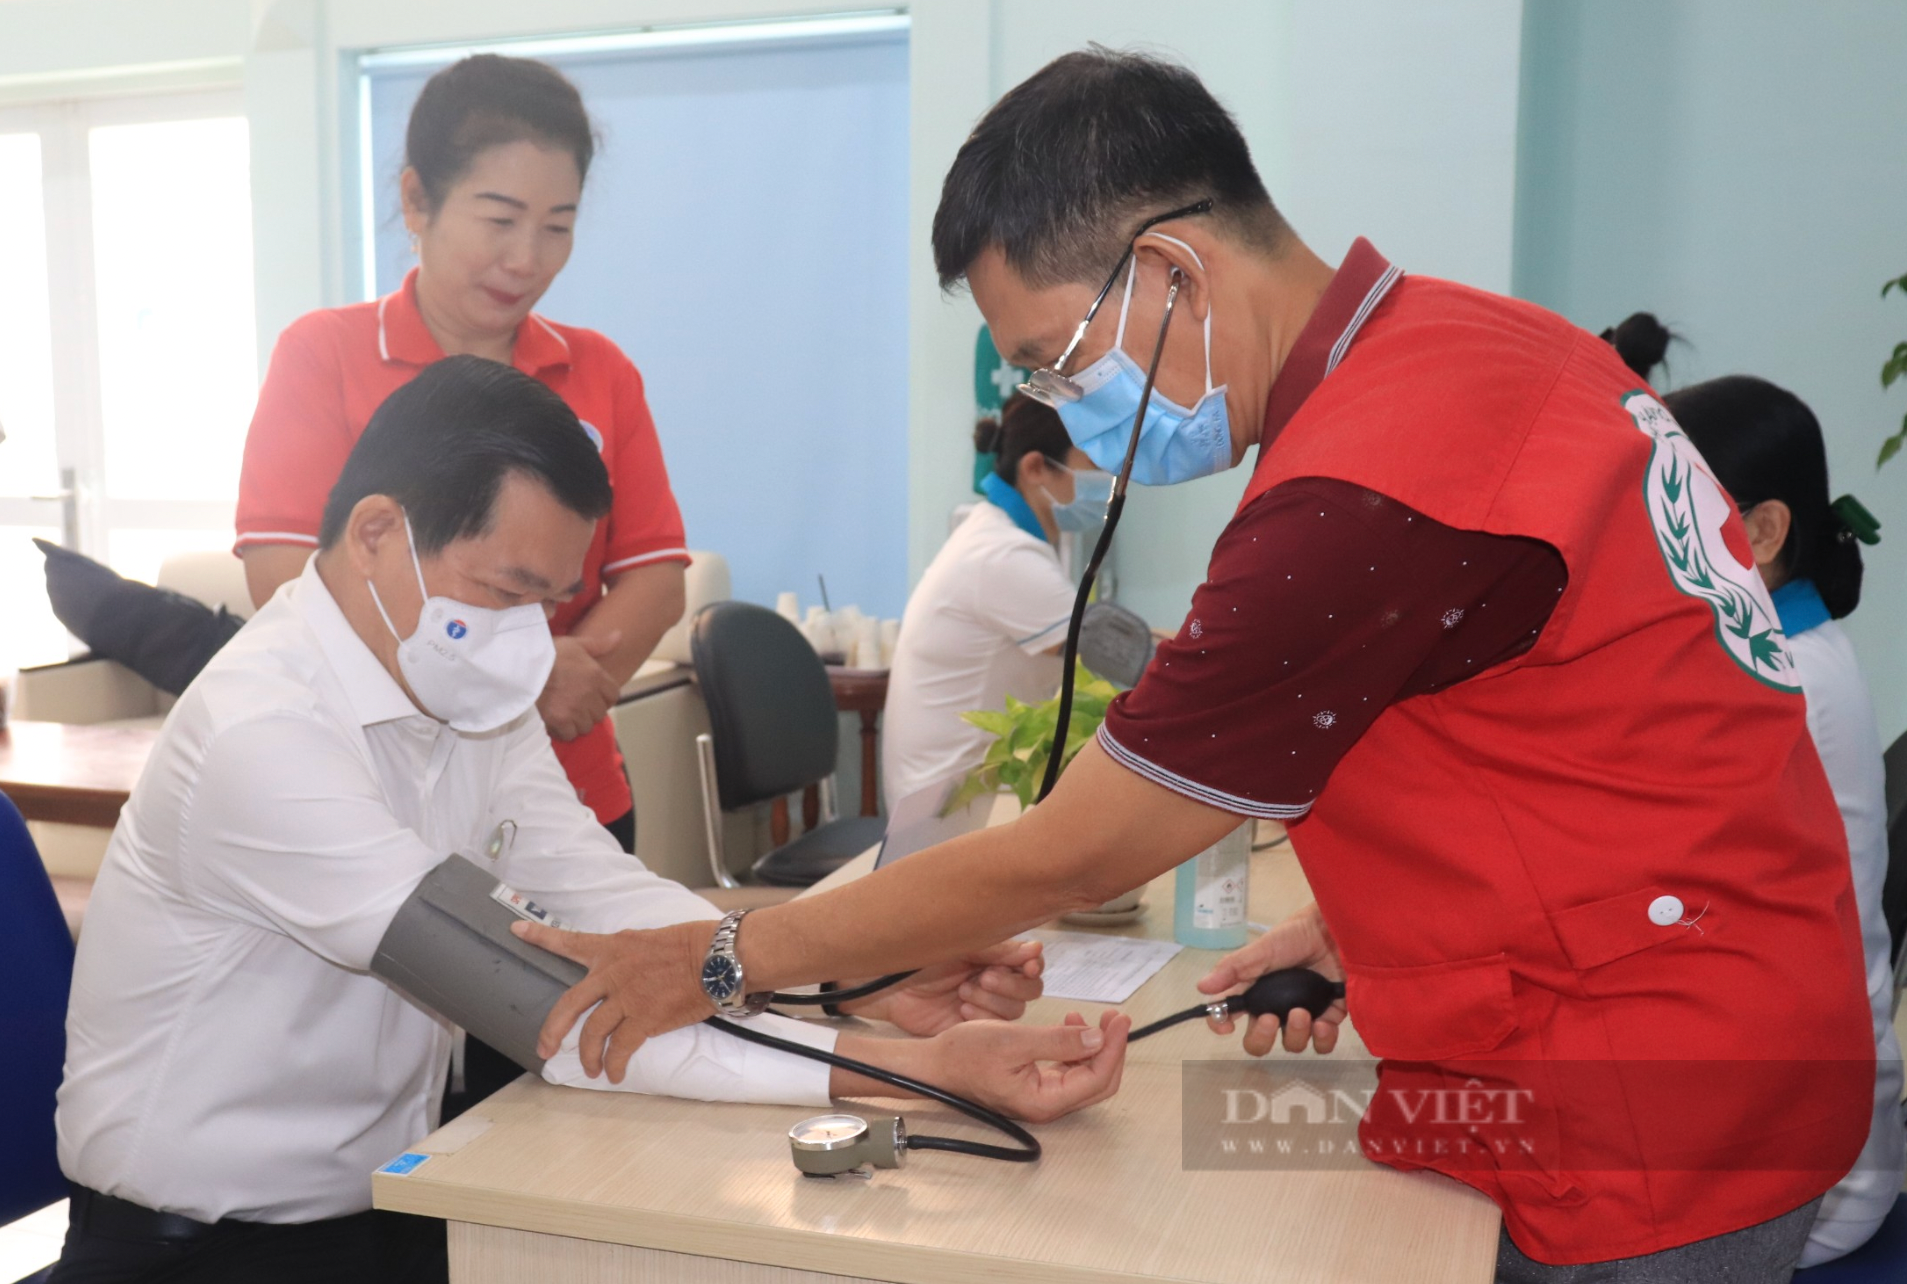 Đồng Nai: Bí thư Tỉnh ủy Nguyễn Hồng Lĩnh cùng nhiều lãnh đạo tham gia hiến máu tình nguyện  - Ảnh 1.